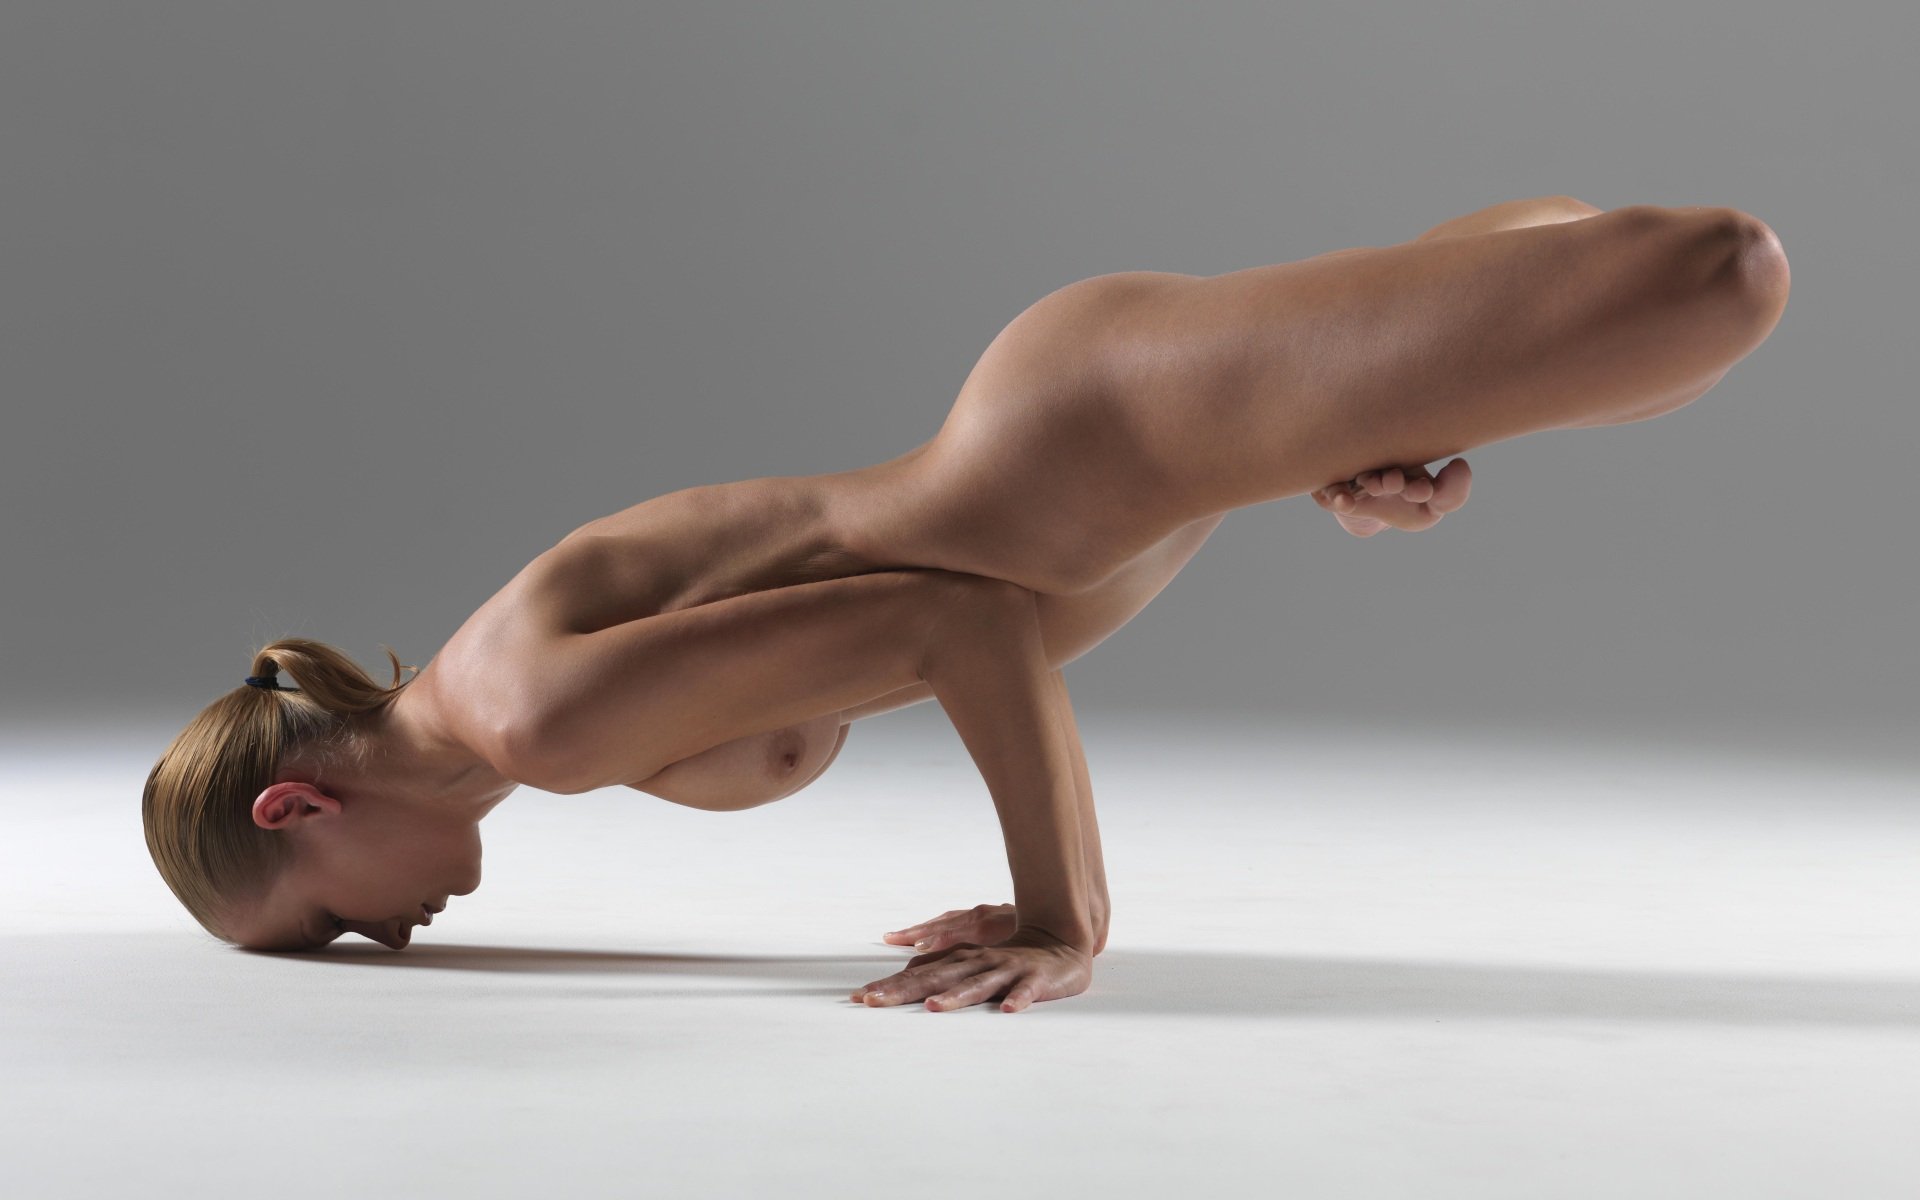 Flexible nude